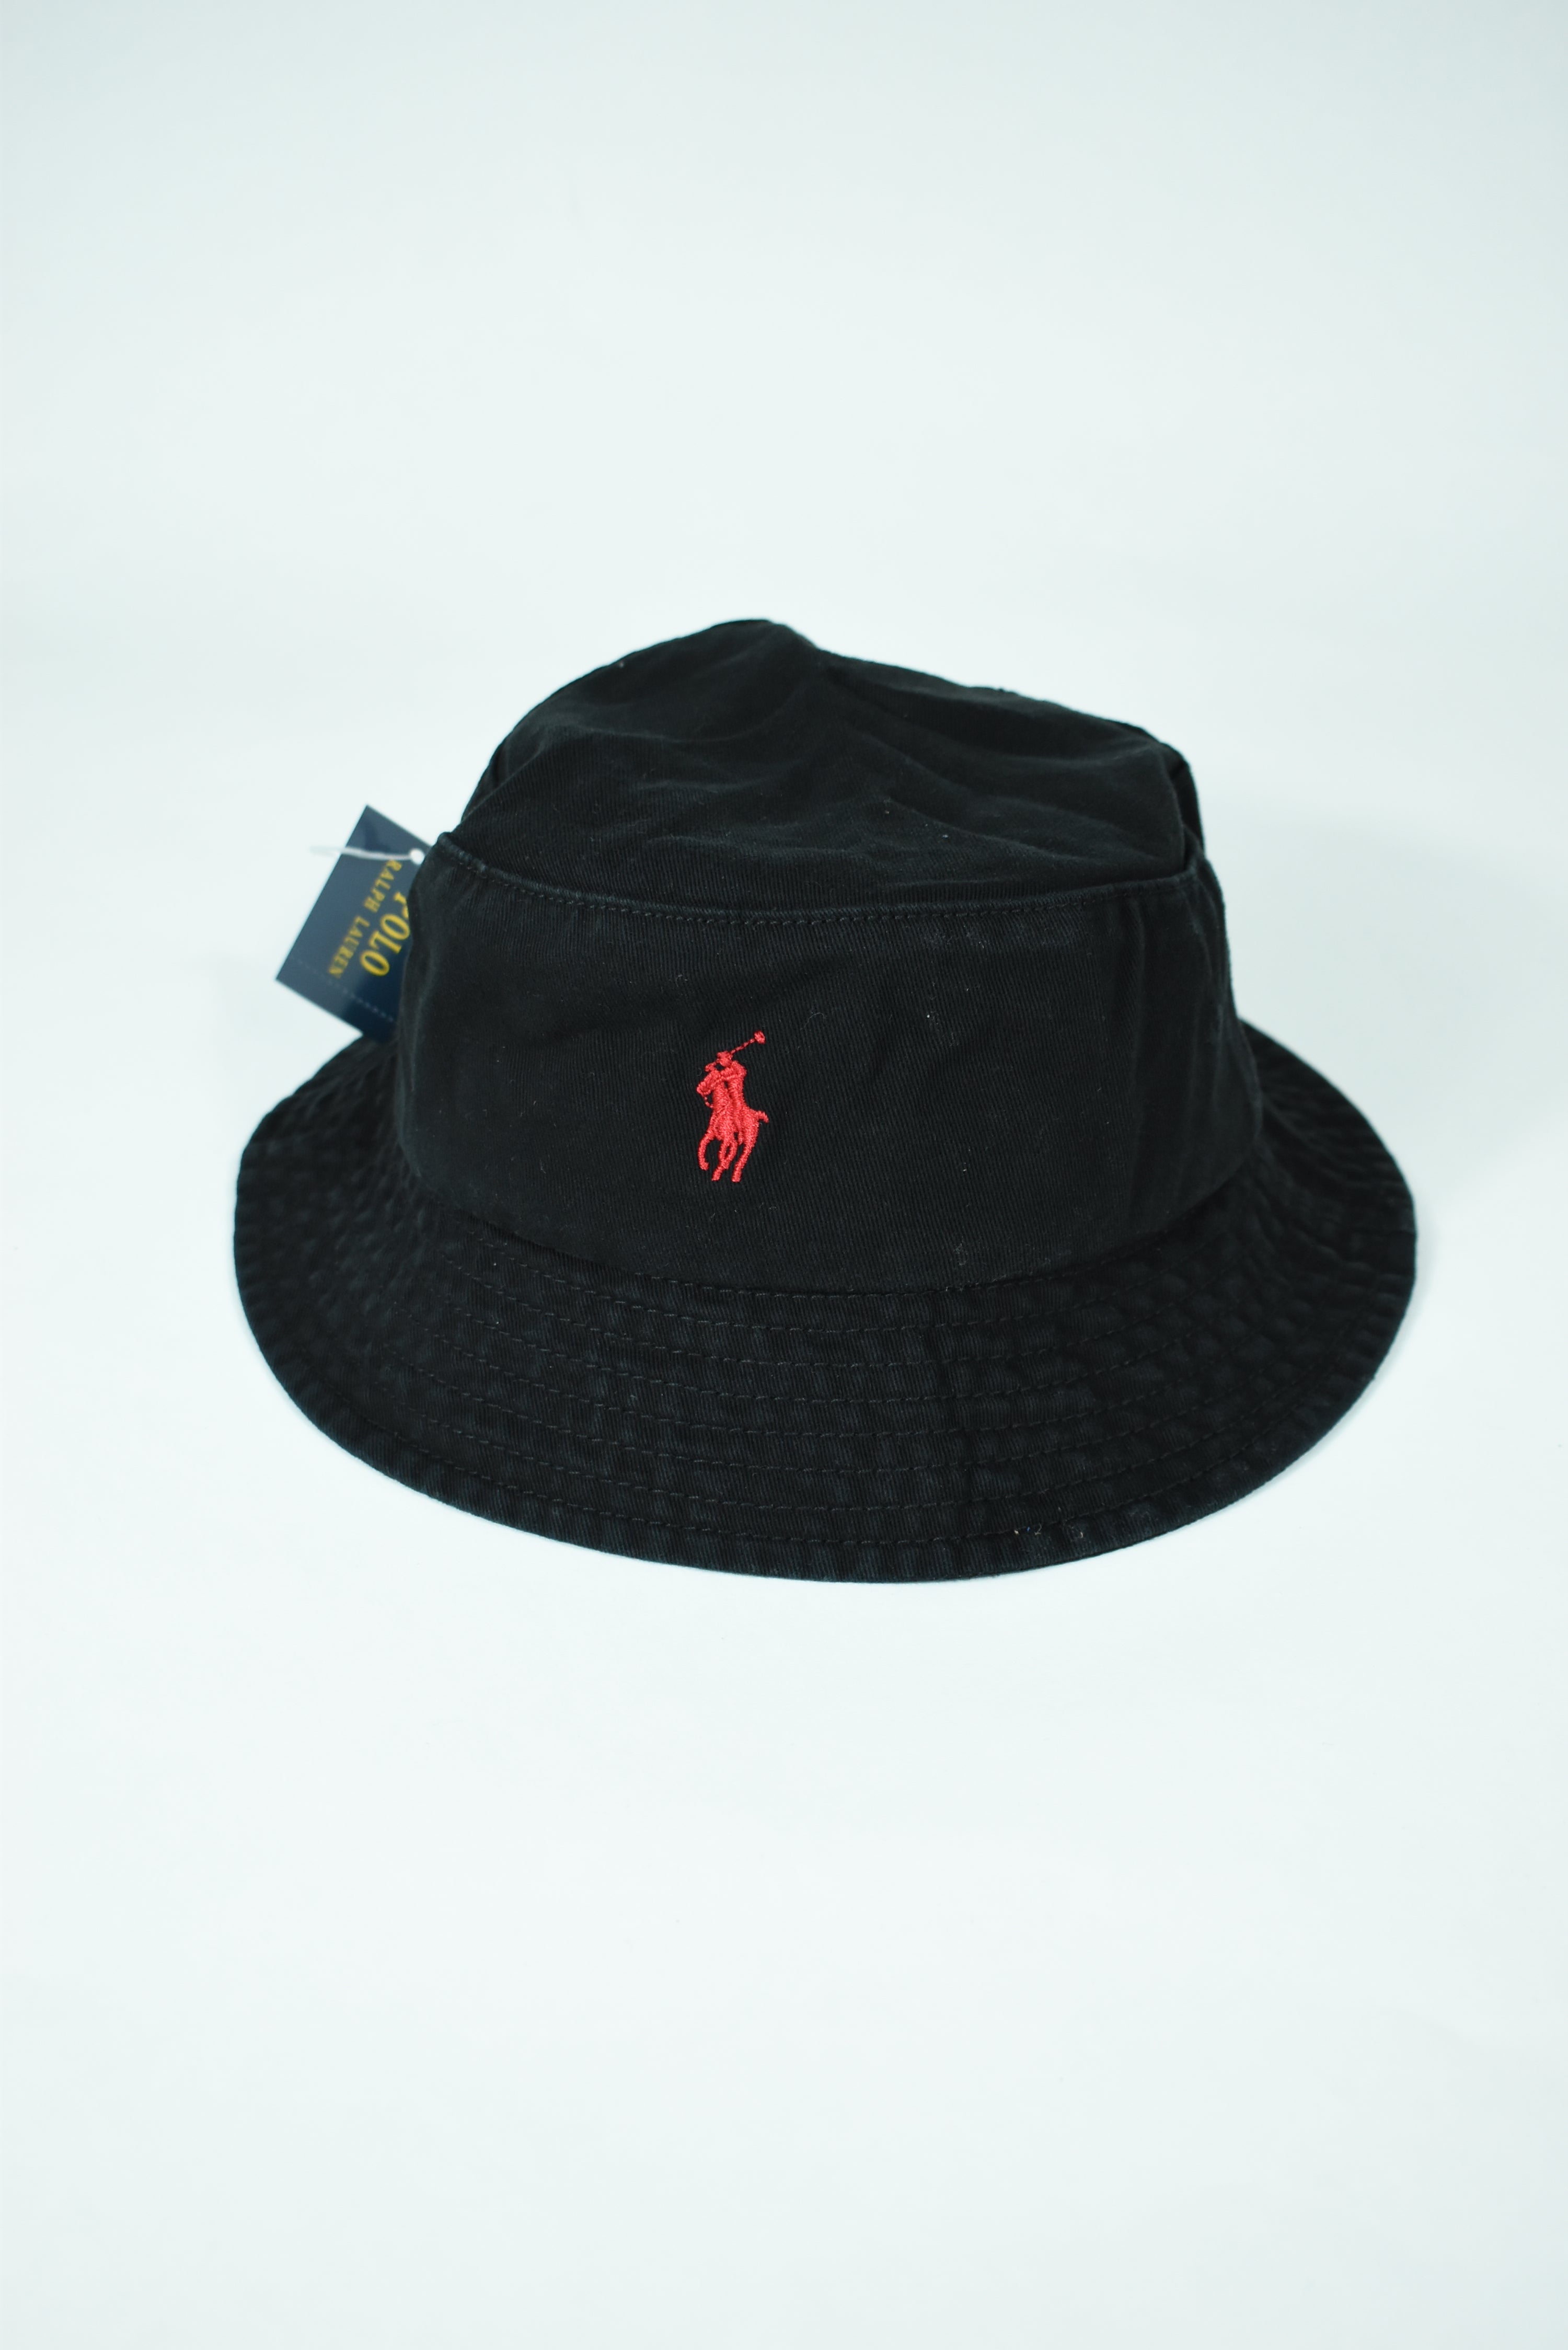 New Black Ralph Lauren Embroidery Bucket Hat